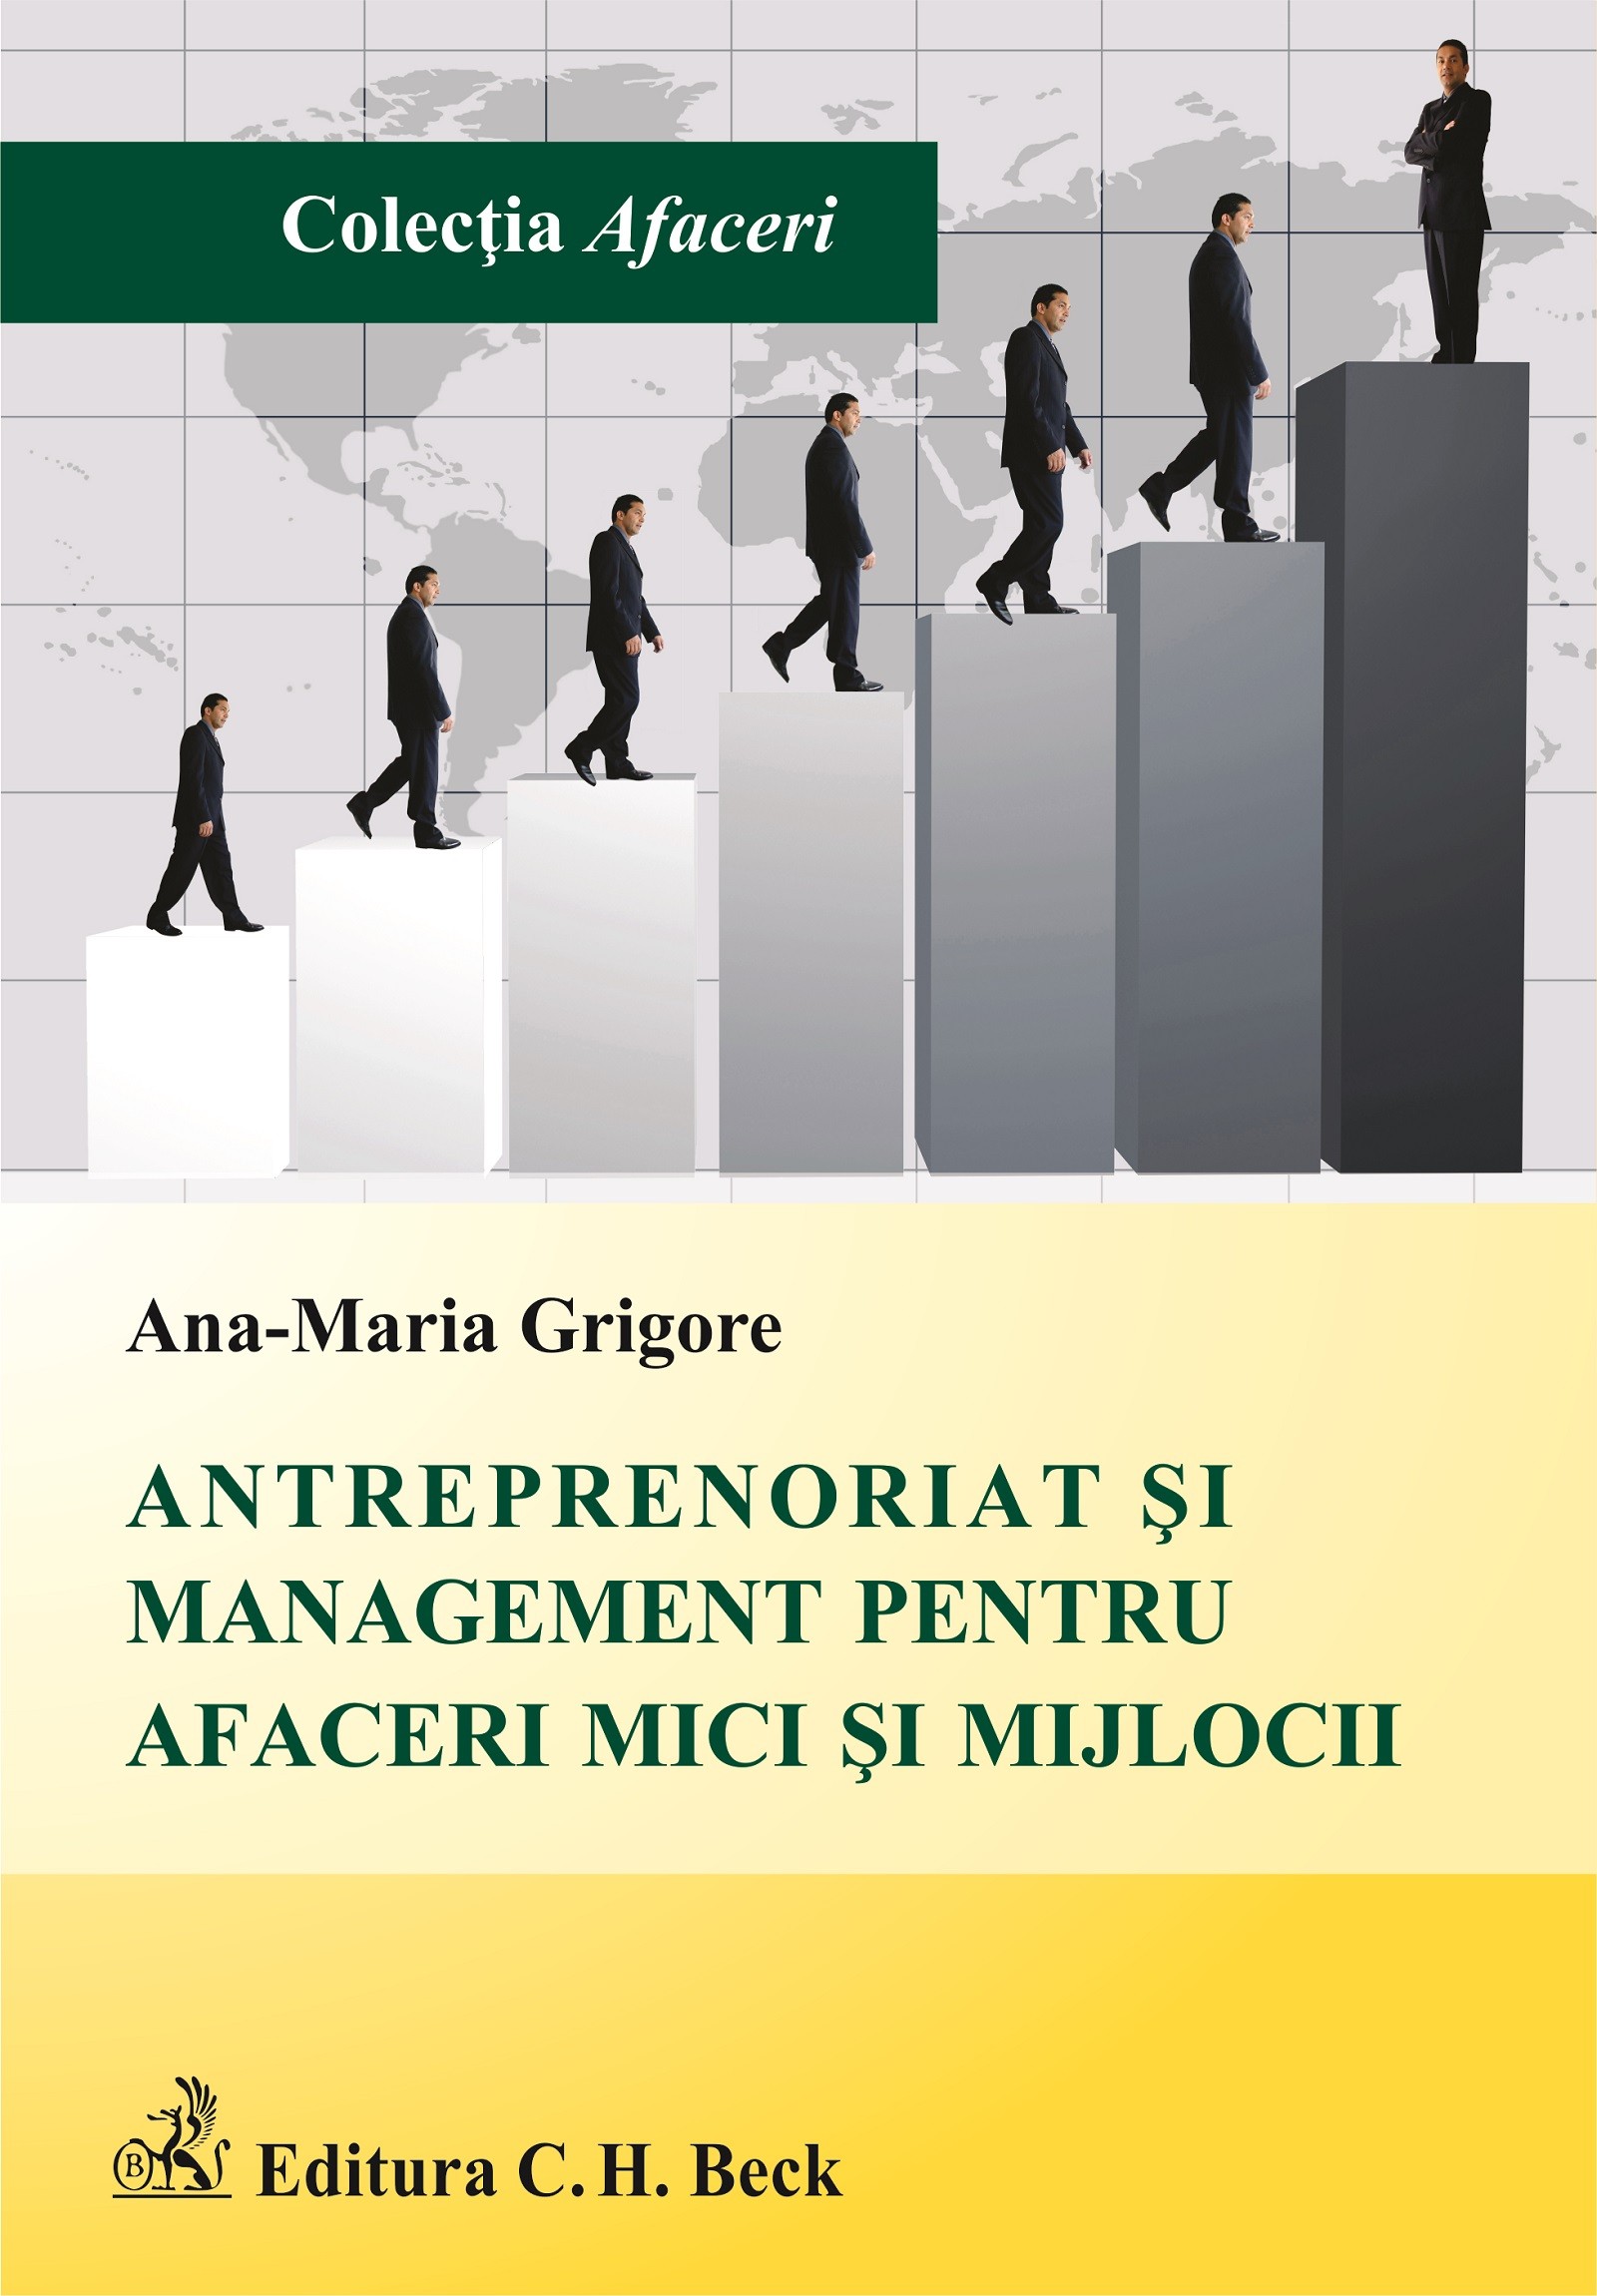 Antreprenoriat si management pentru afaceri mici si mijlocii - Ana-Maria Grigore